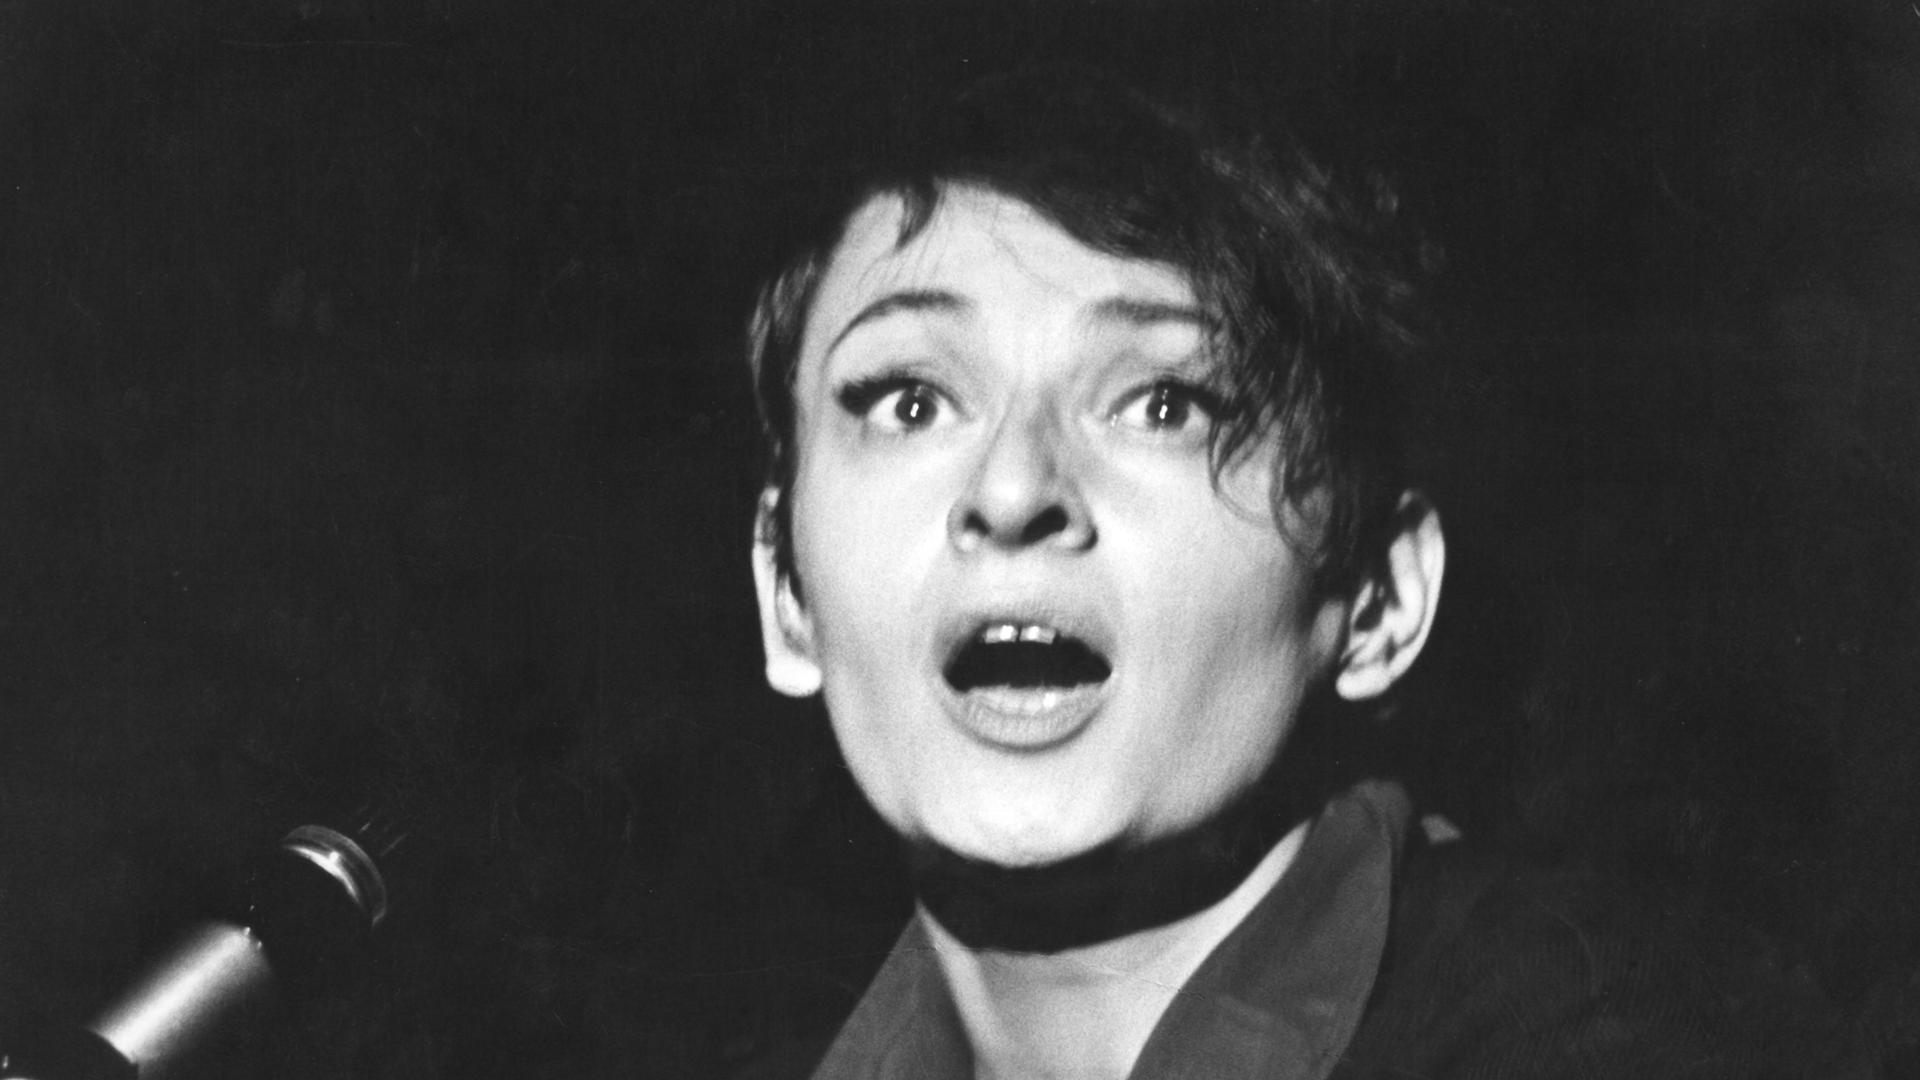 Die französische Chanson-Sängerin und Komponistin Barbara, aufgenommen im September 1965